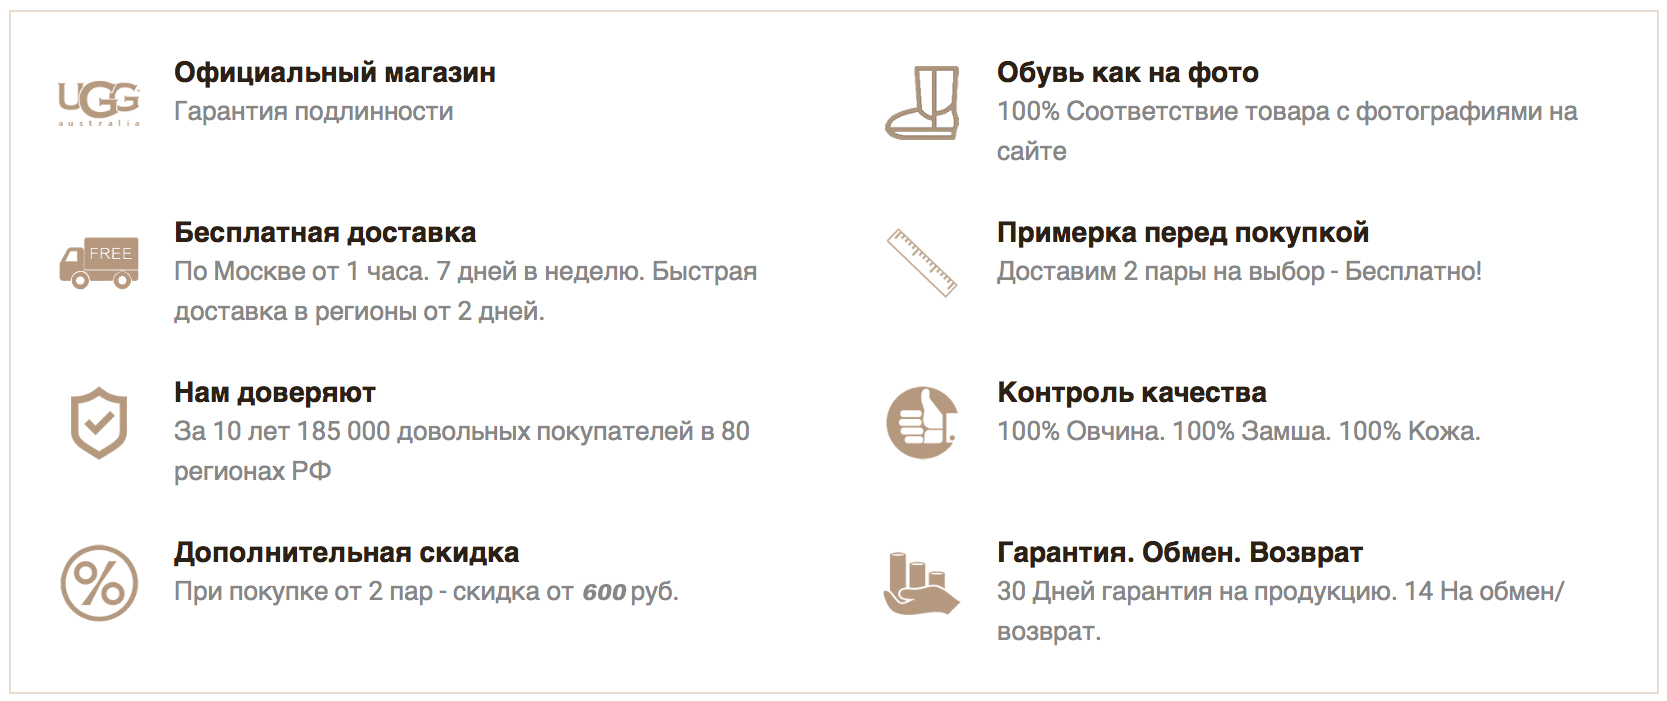 http://uggi-moscow.ru/images/upload/женские угги купить в москве2.png